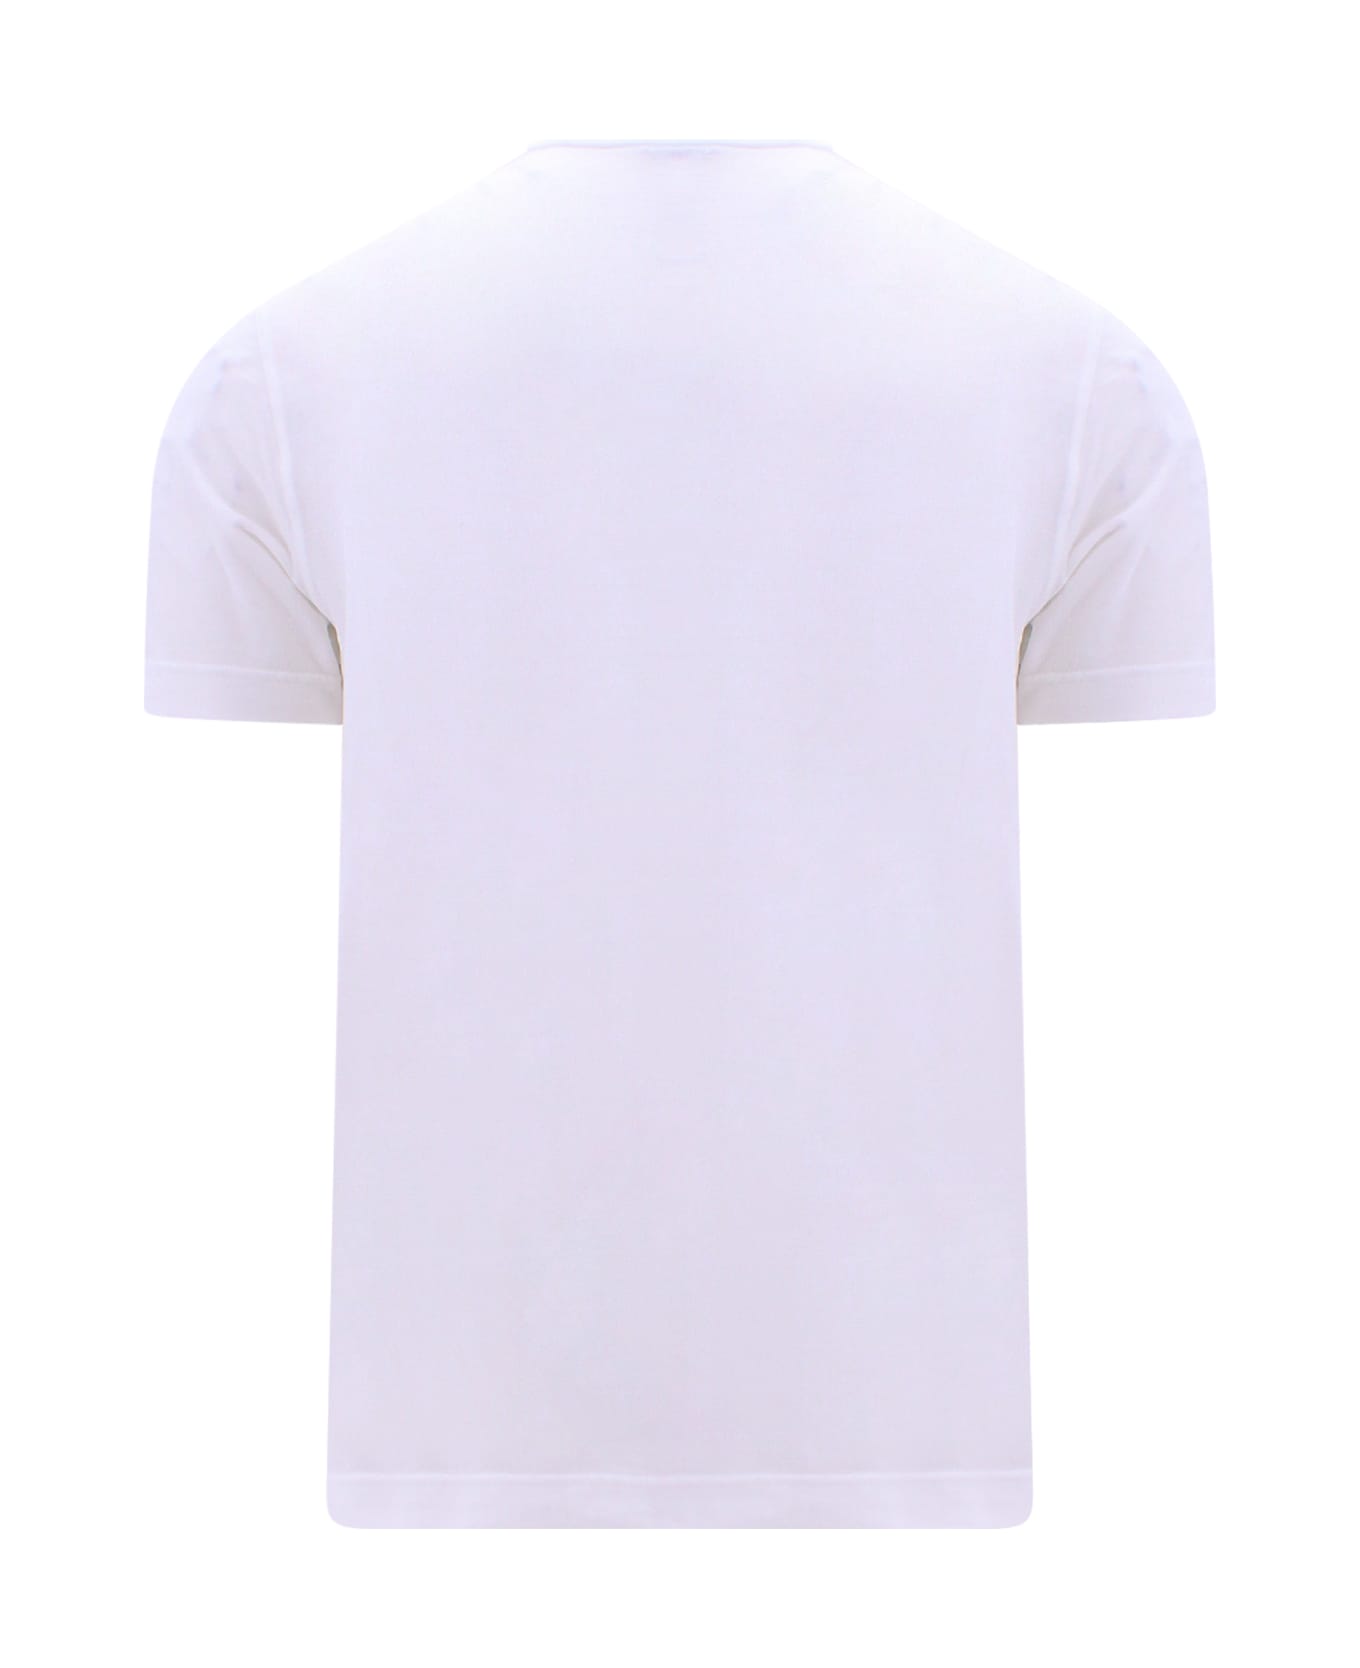 Zanone T-shirt - White シャツ